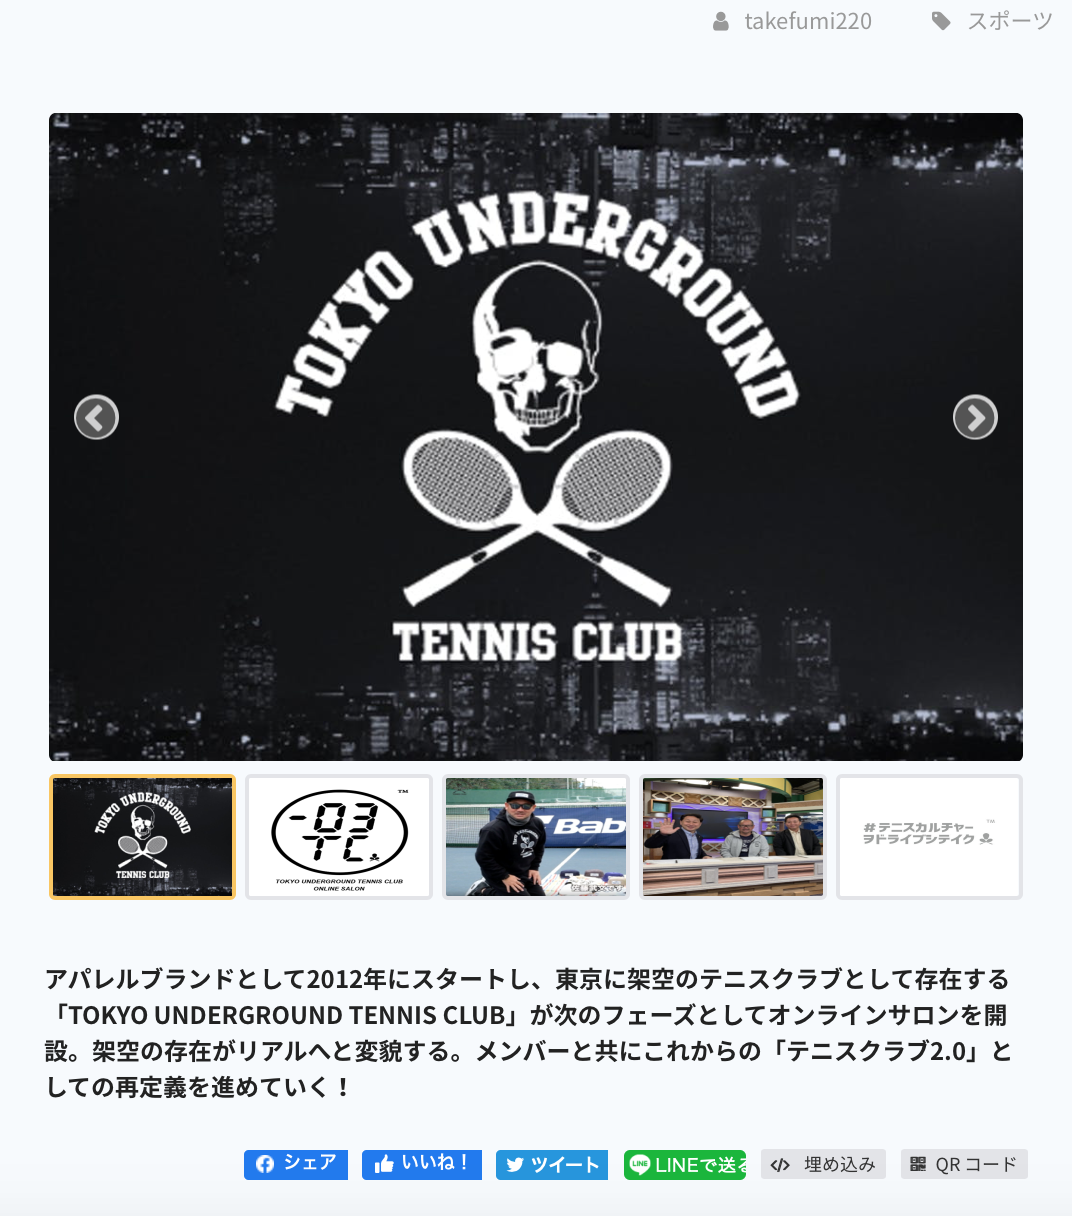 TOKYO UNDERGROUND TENNIS CLUB ONLINE SALON【Takefumi Sato硬式ブログ】